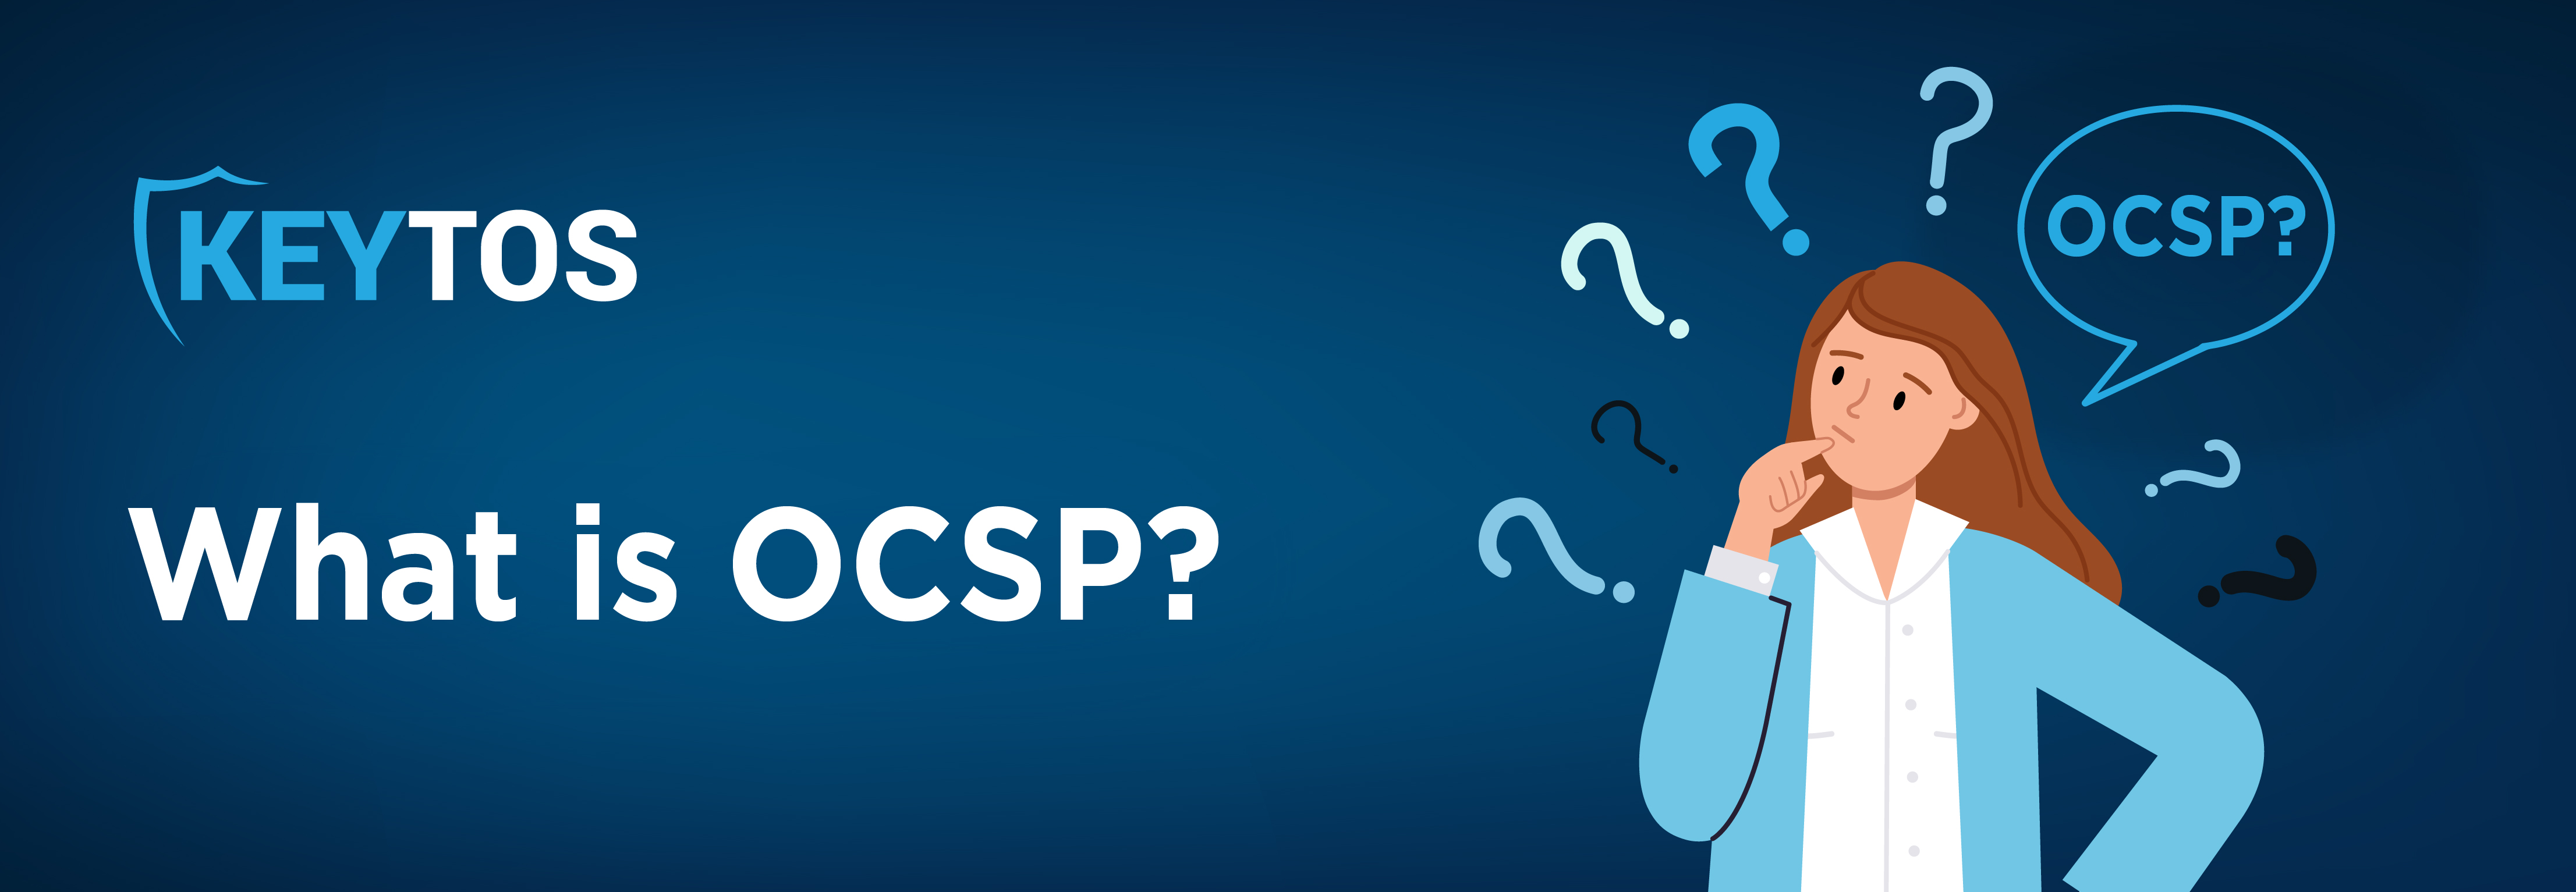 ¿Qué es OCSP?